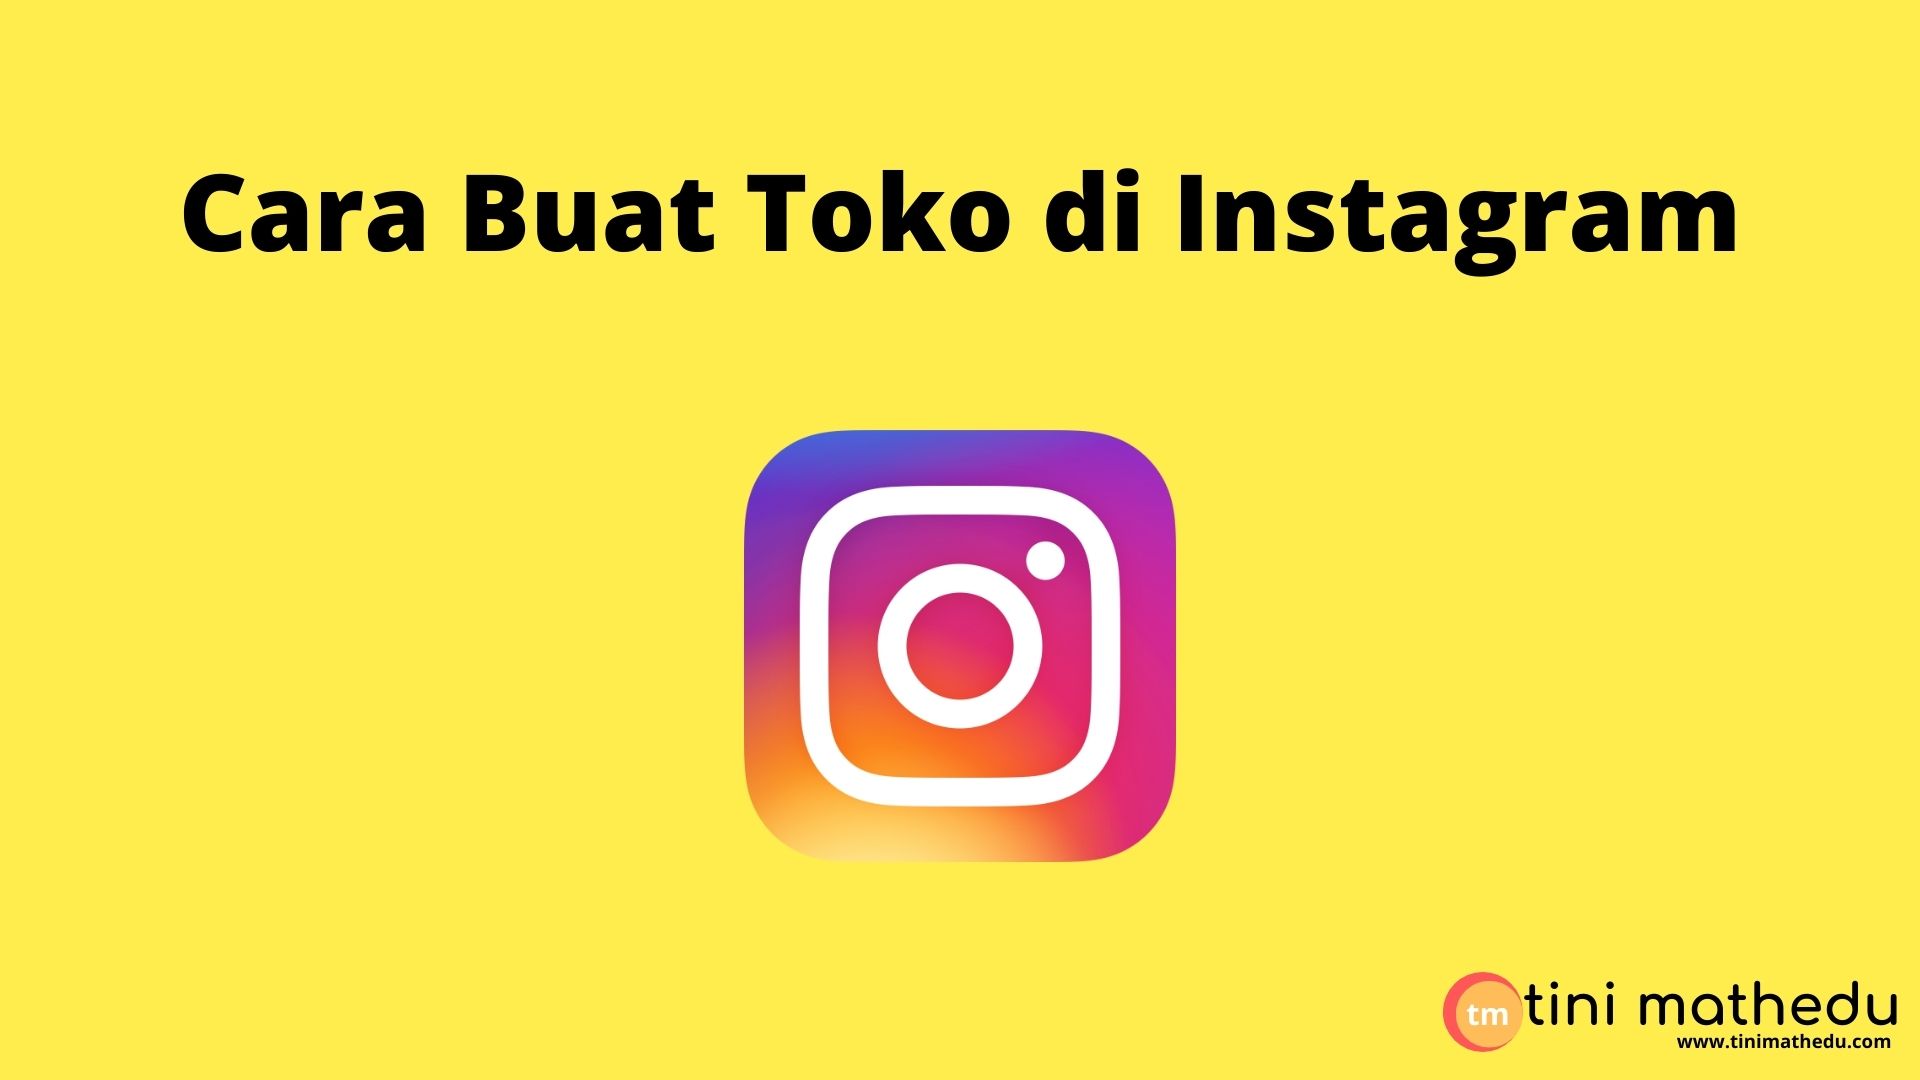 Cara Buat Toko di Instagram